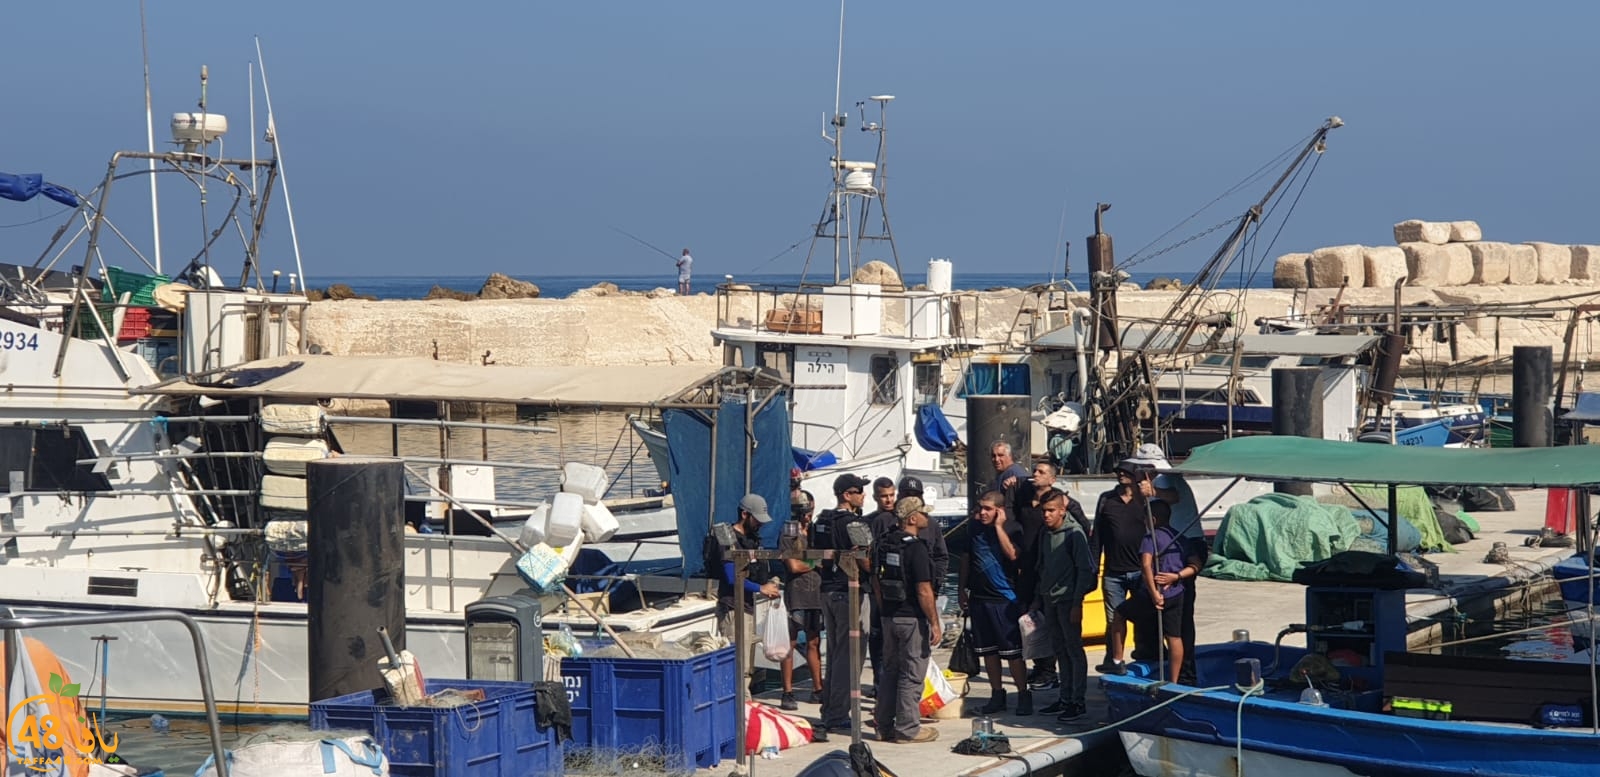 بالفيديو: حملة مداهمة وتفتيش على مراكب الصيادين في ميناء يافا 